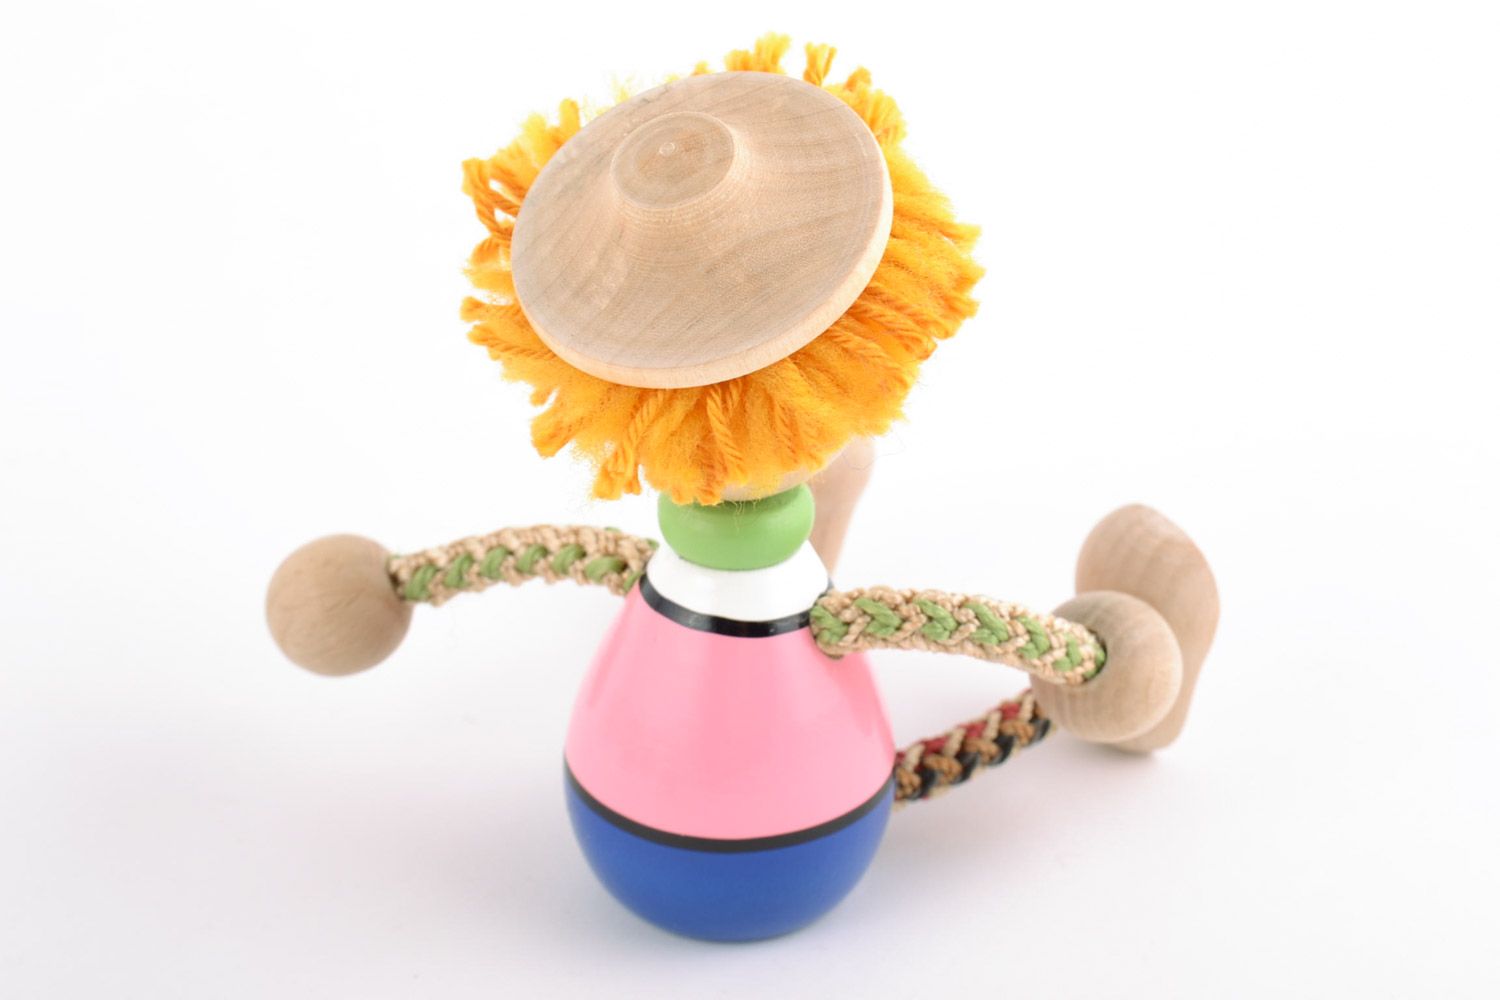 Игрушка из дерева авторского дизайна ручной работы расписанная эко красками фото 3